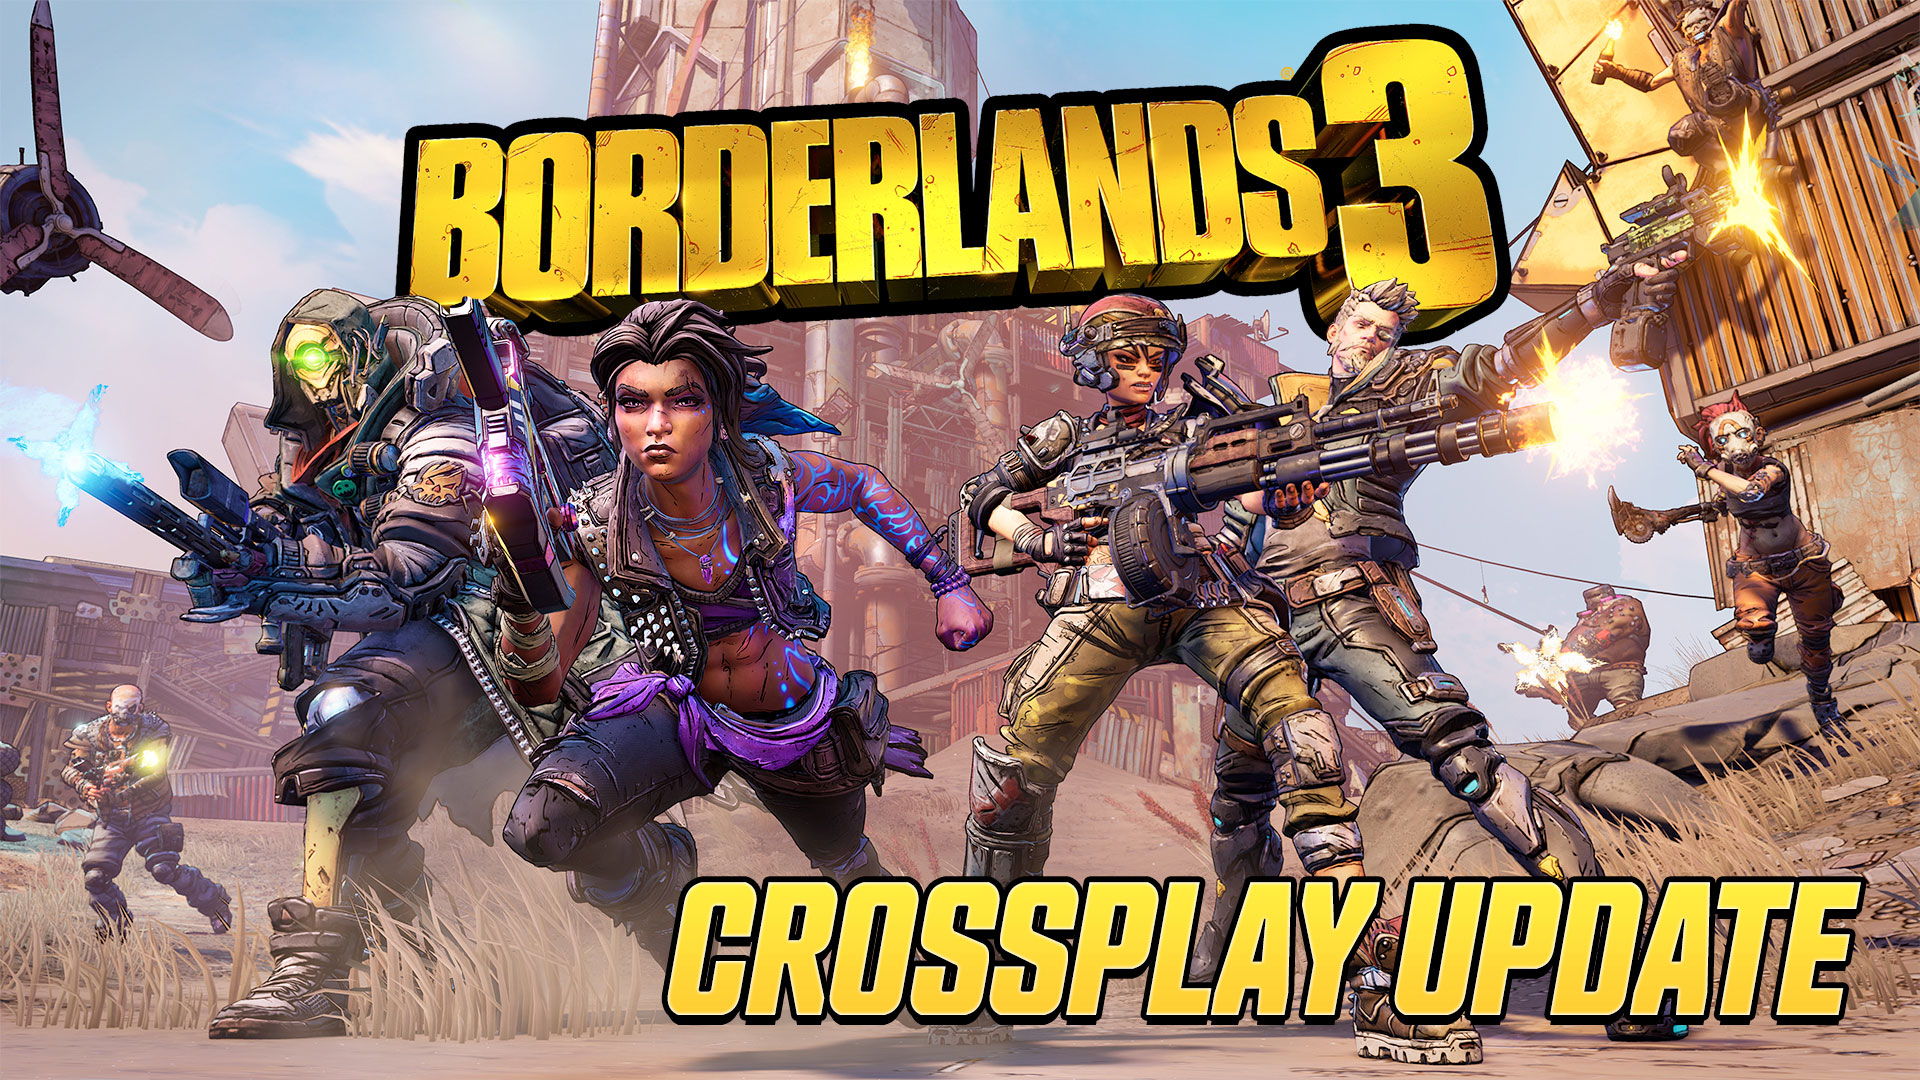 Actualización cruzada de Borderlands 3 lanzada con soporte para PS4 y PS5